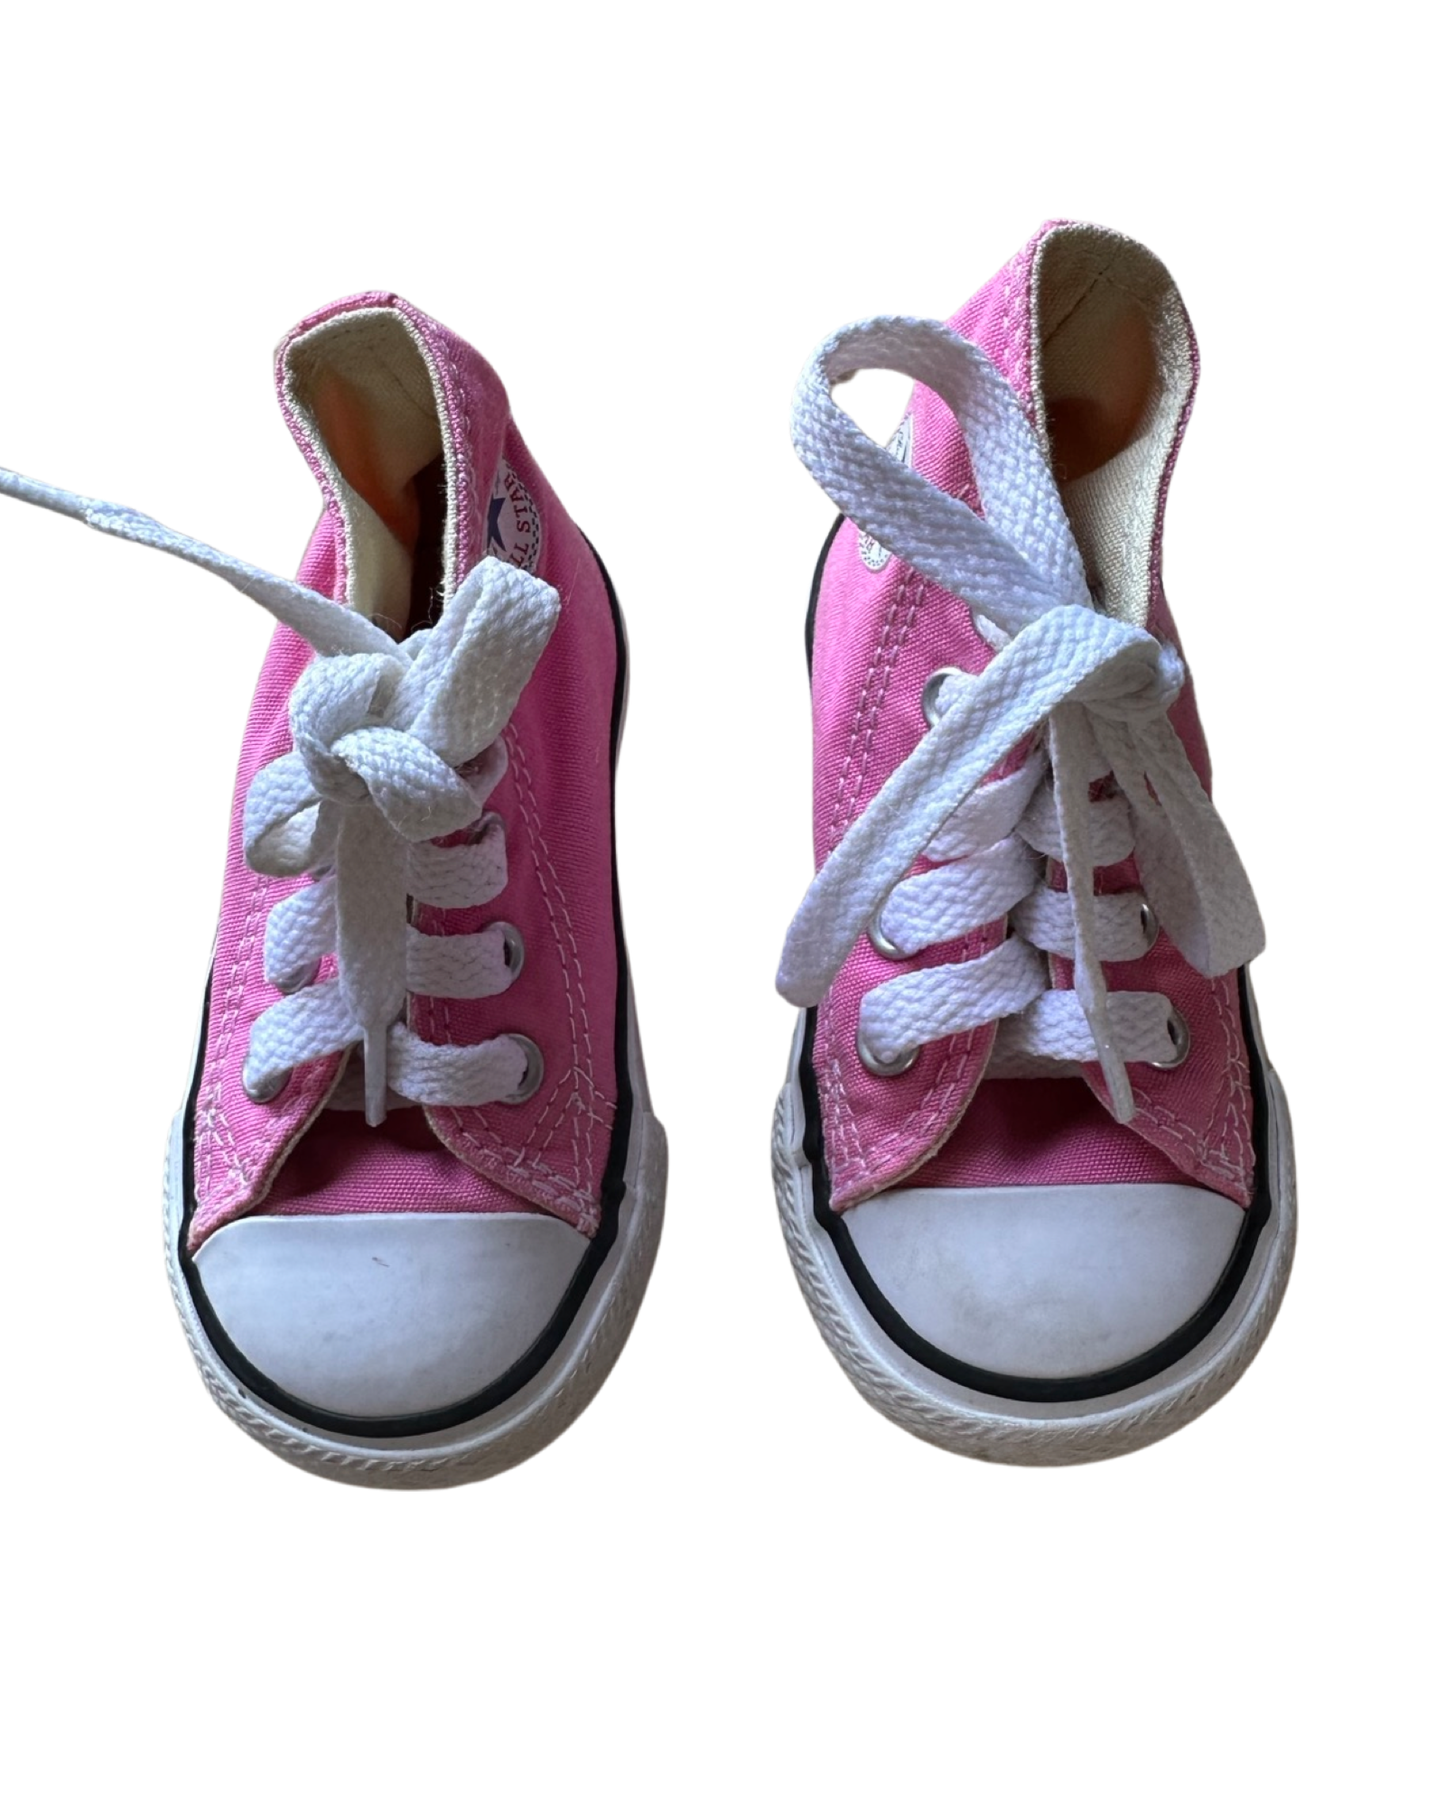 Converse Chuck Taylor infant hi tops in pink (UK4/EU20)